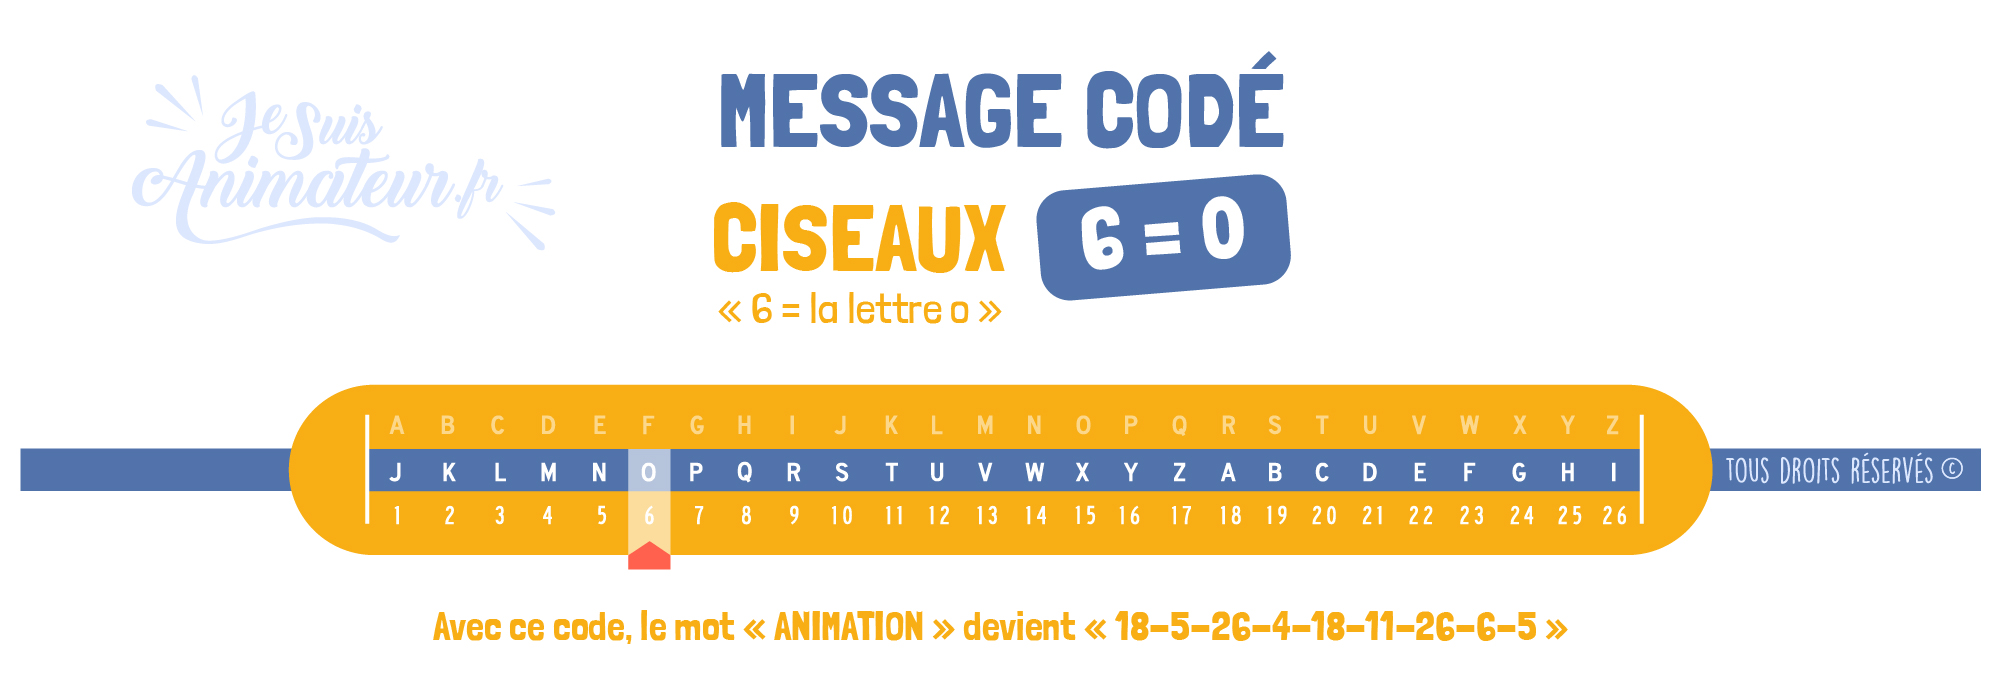 Message codé « Ciseaux » (6 = O)